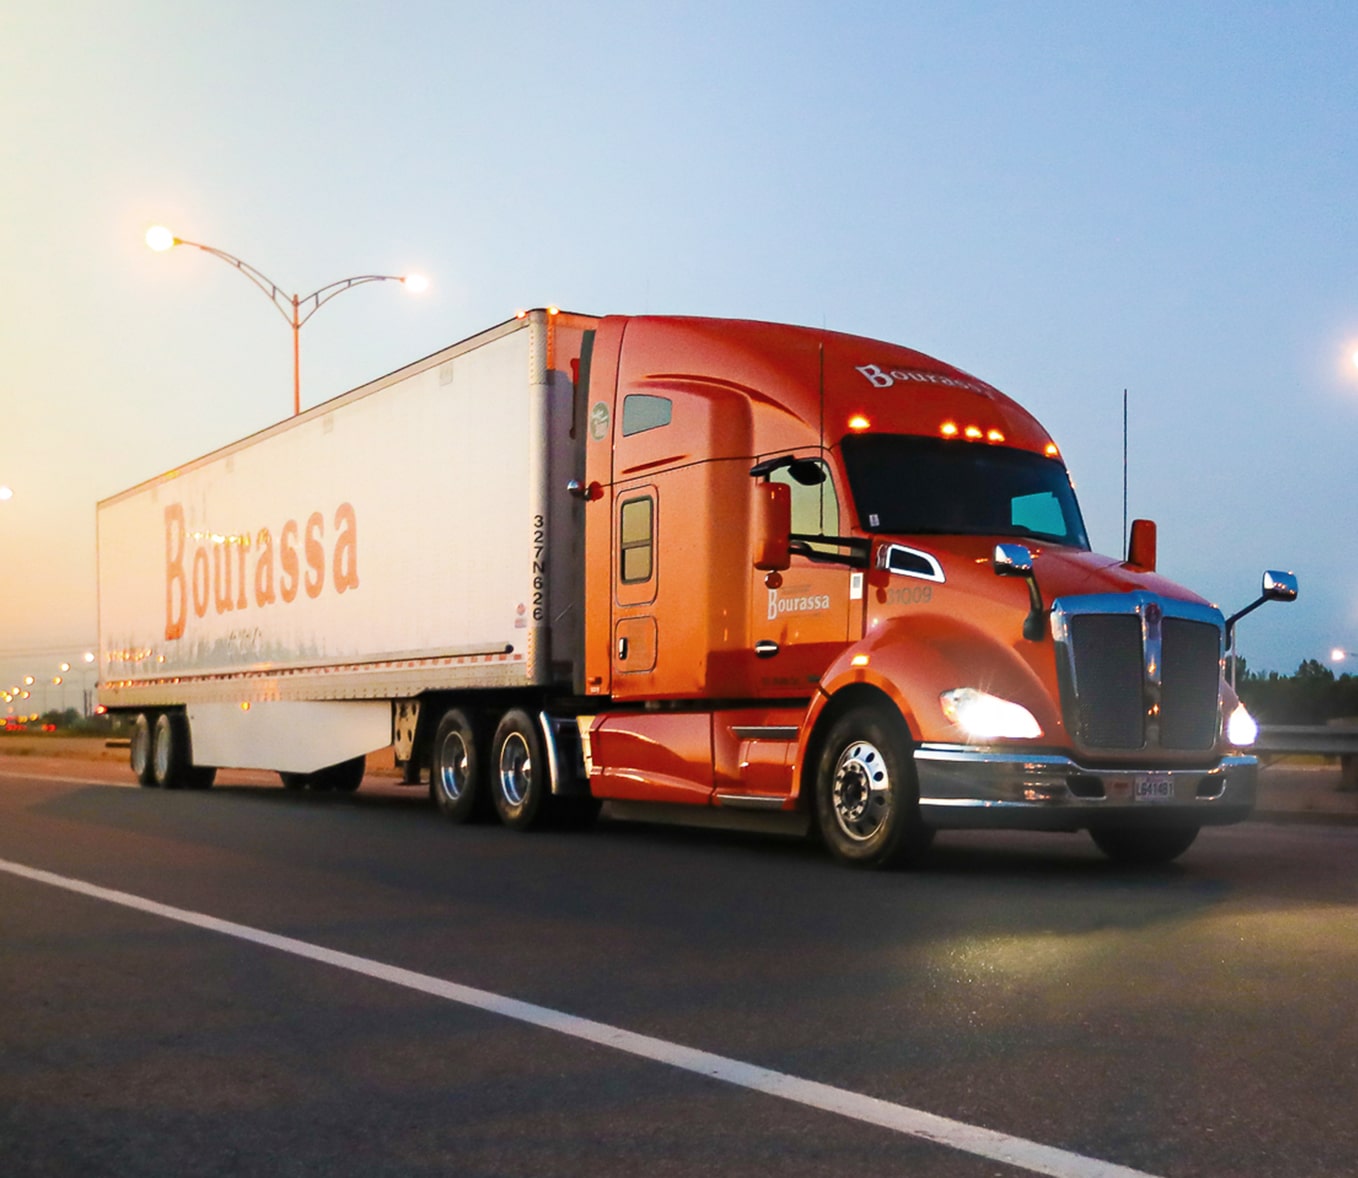 Un camion remorque Transport Bourassa circule sur l'autoroute à l'aube.